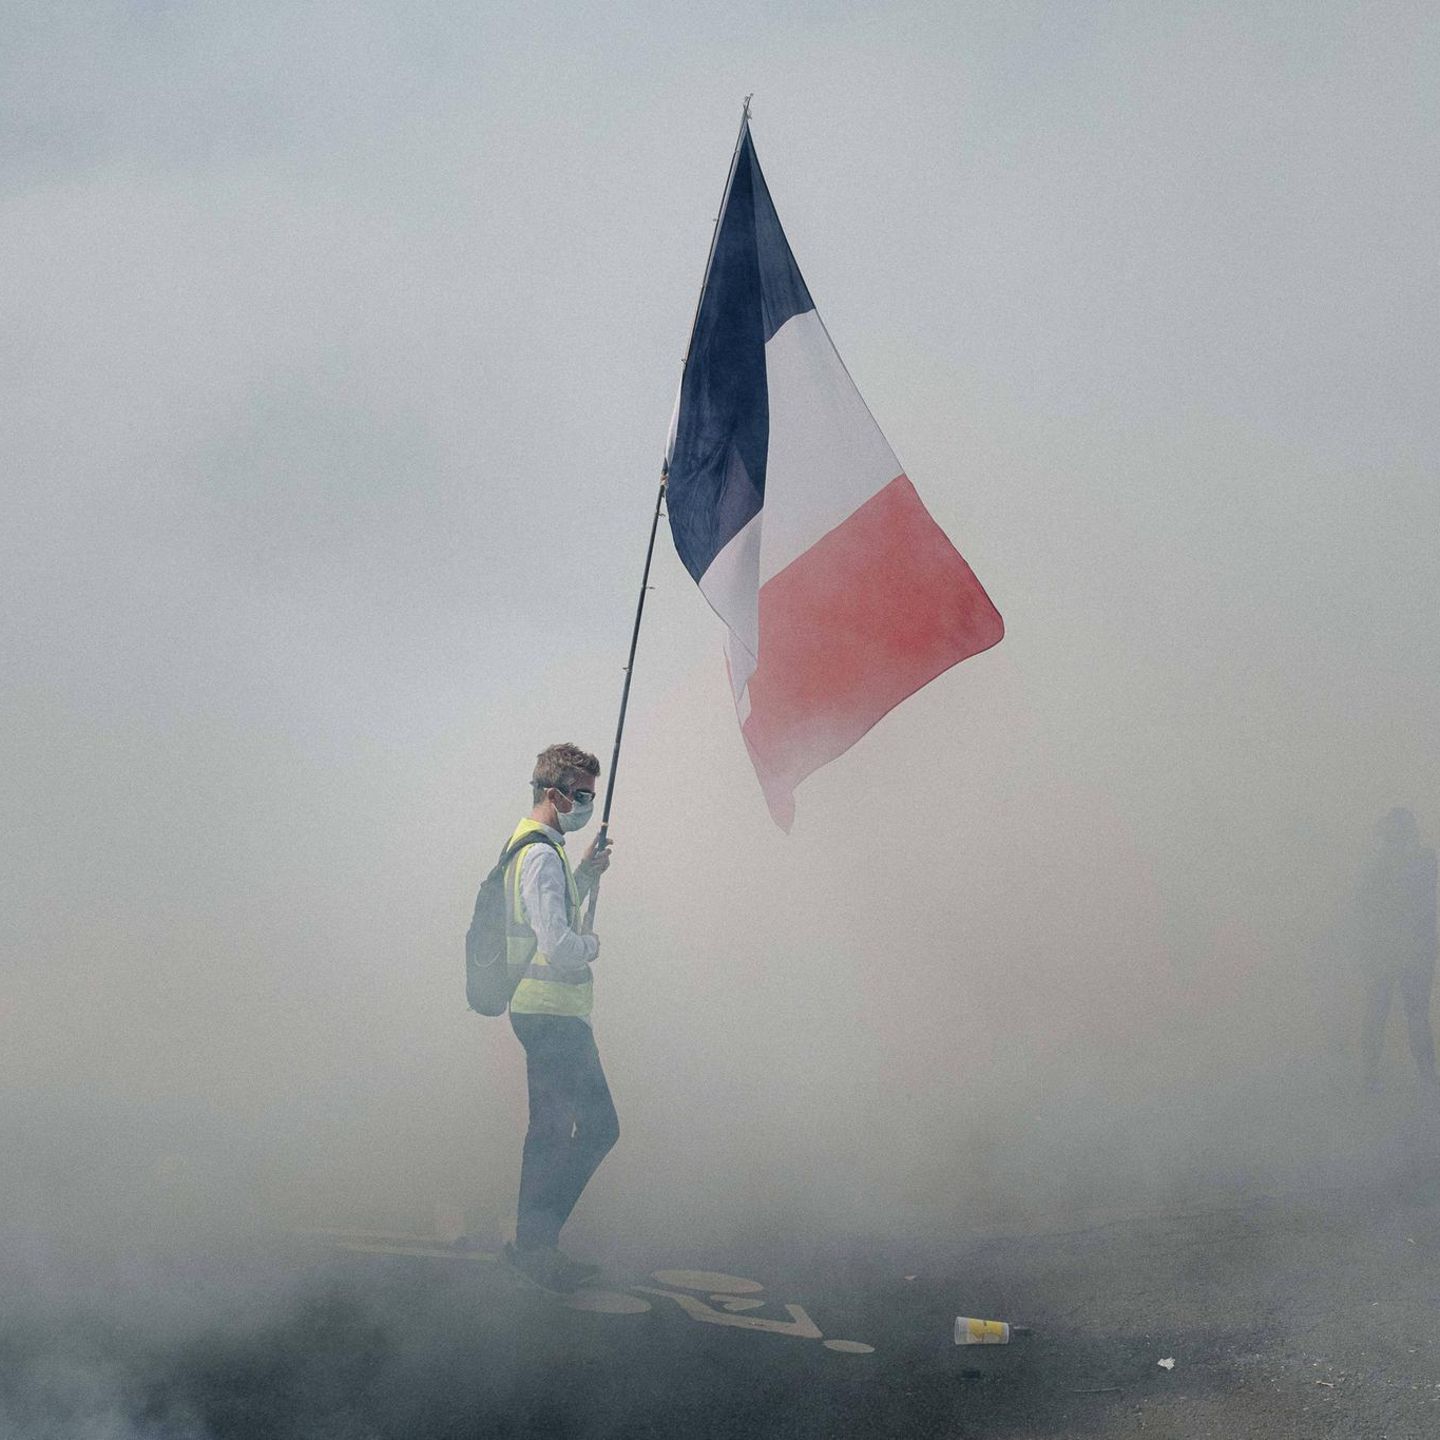 Nationalfeiertag in Paris: Gelbwesten-Demonstration 2020: Durch dichten Rauch leuchtet die Tricolore, Symbol der französischen Republik – aber auch Sinnbild der Revolution und des Widerstands gegen die Staatsgewalt